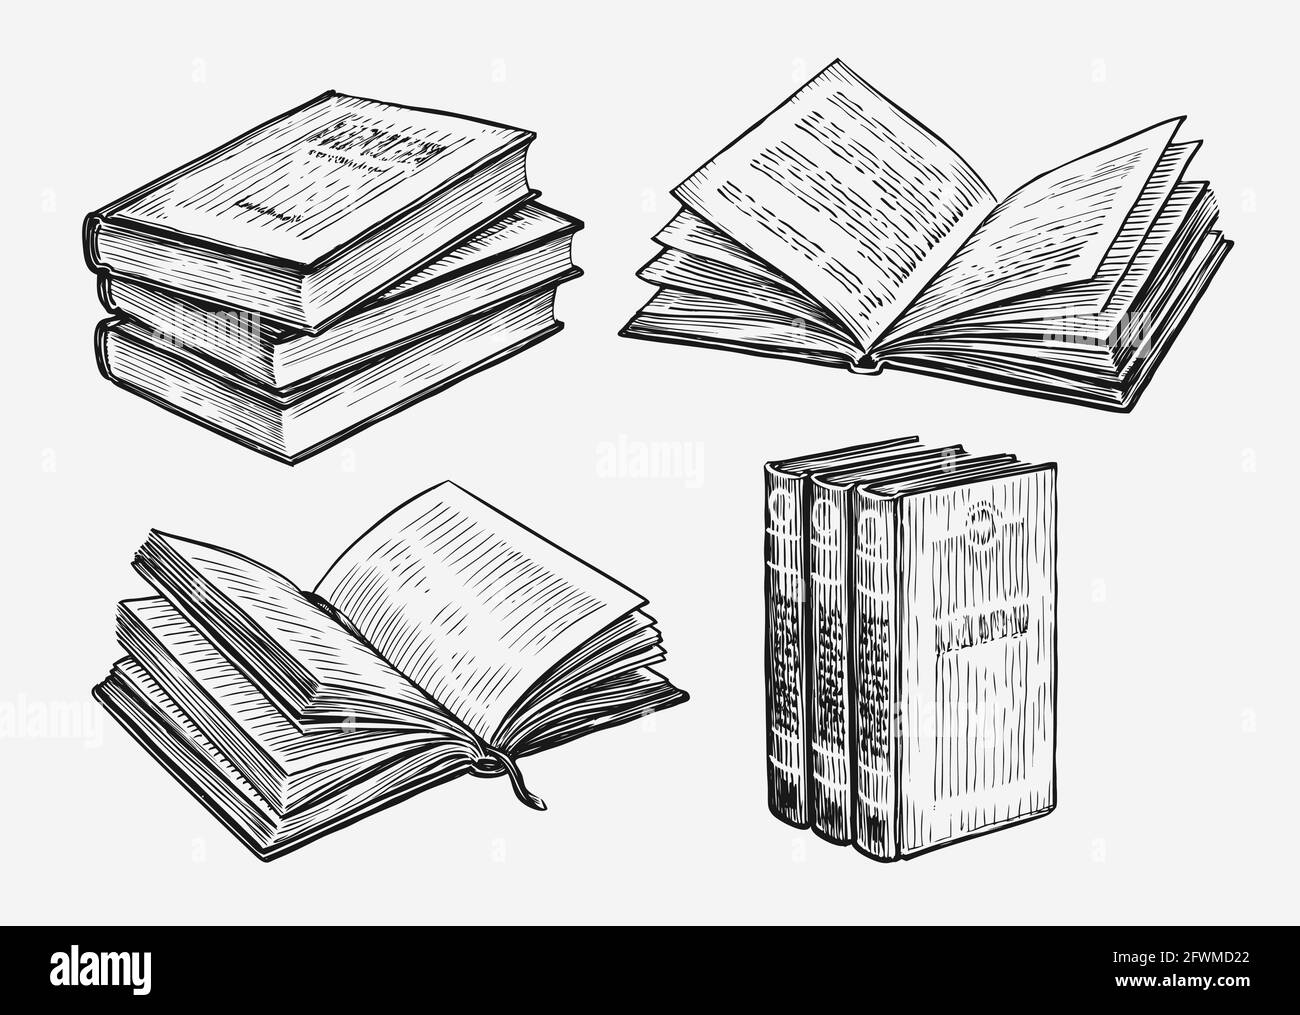 Les livres définissent l'esquisse. Illustration vectorielle vintage du concept éducatif Illustration de Vecteur